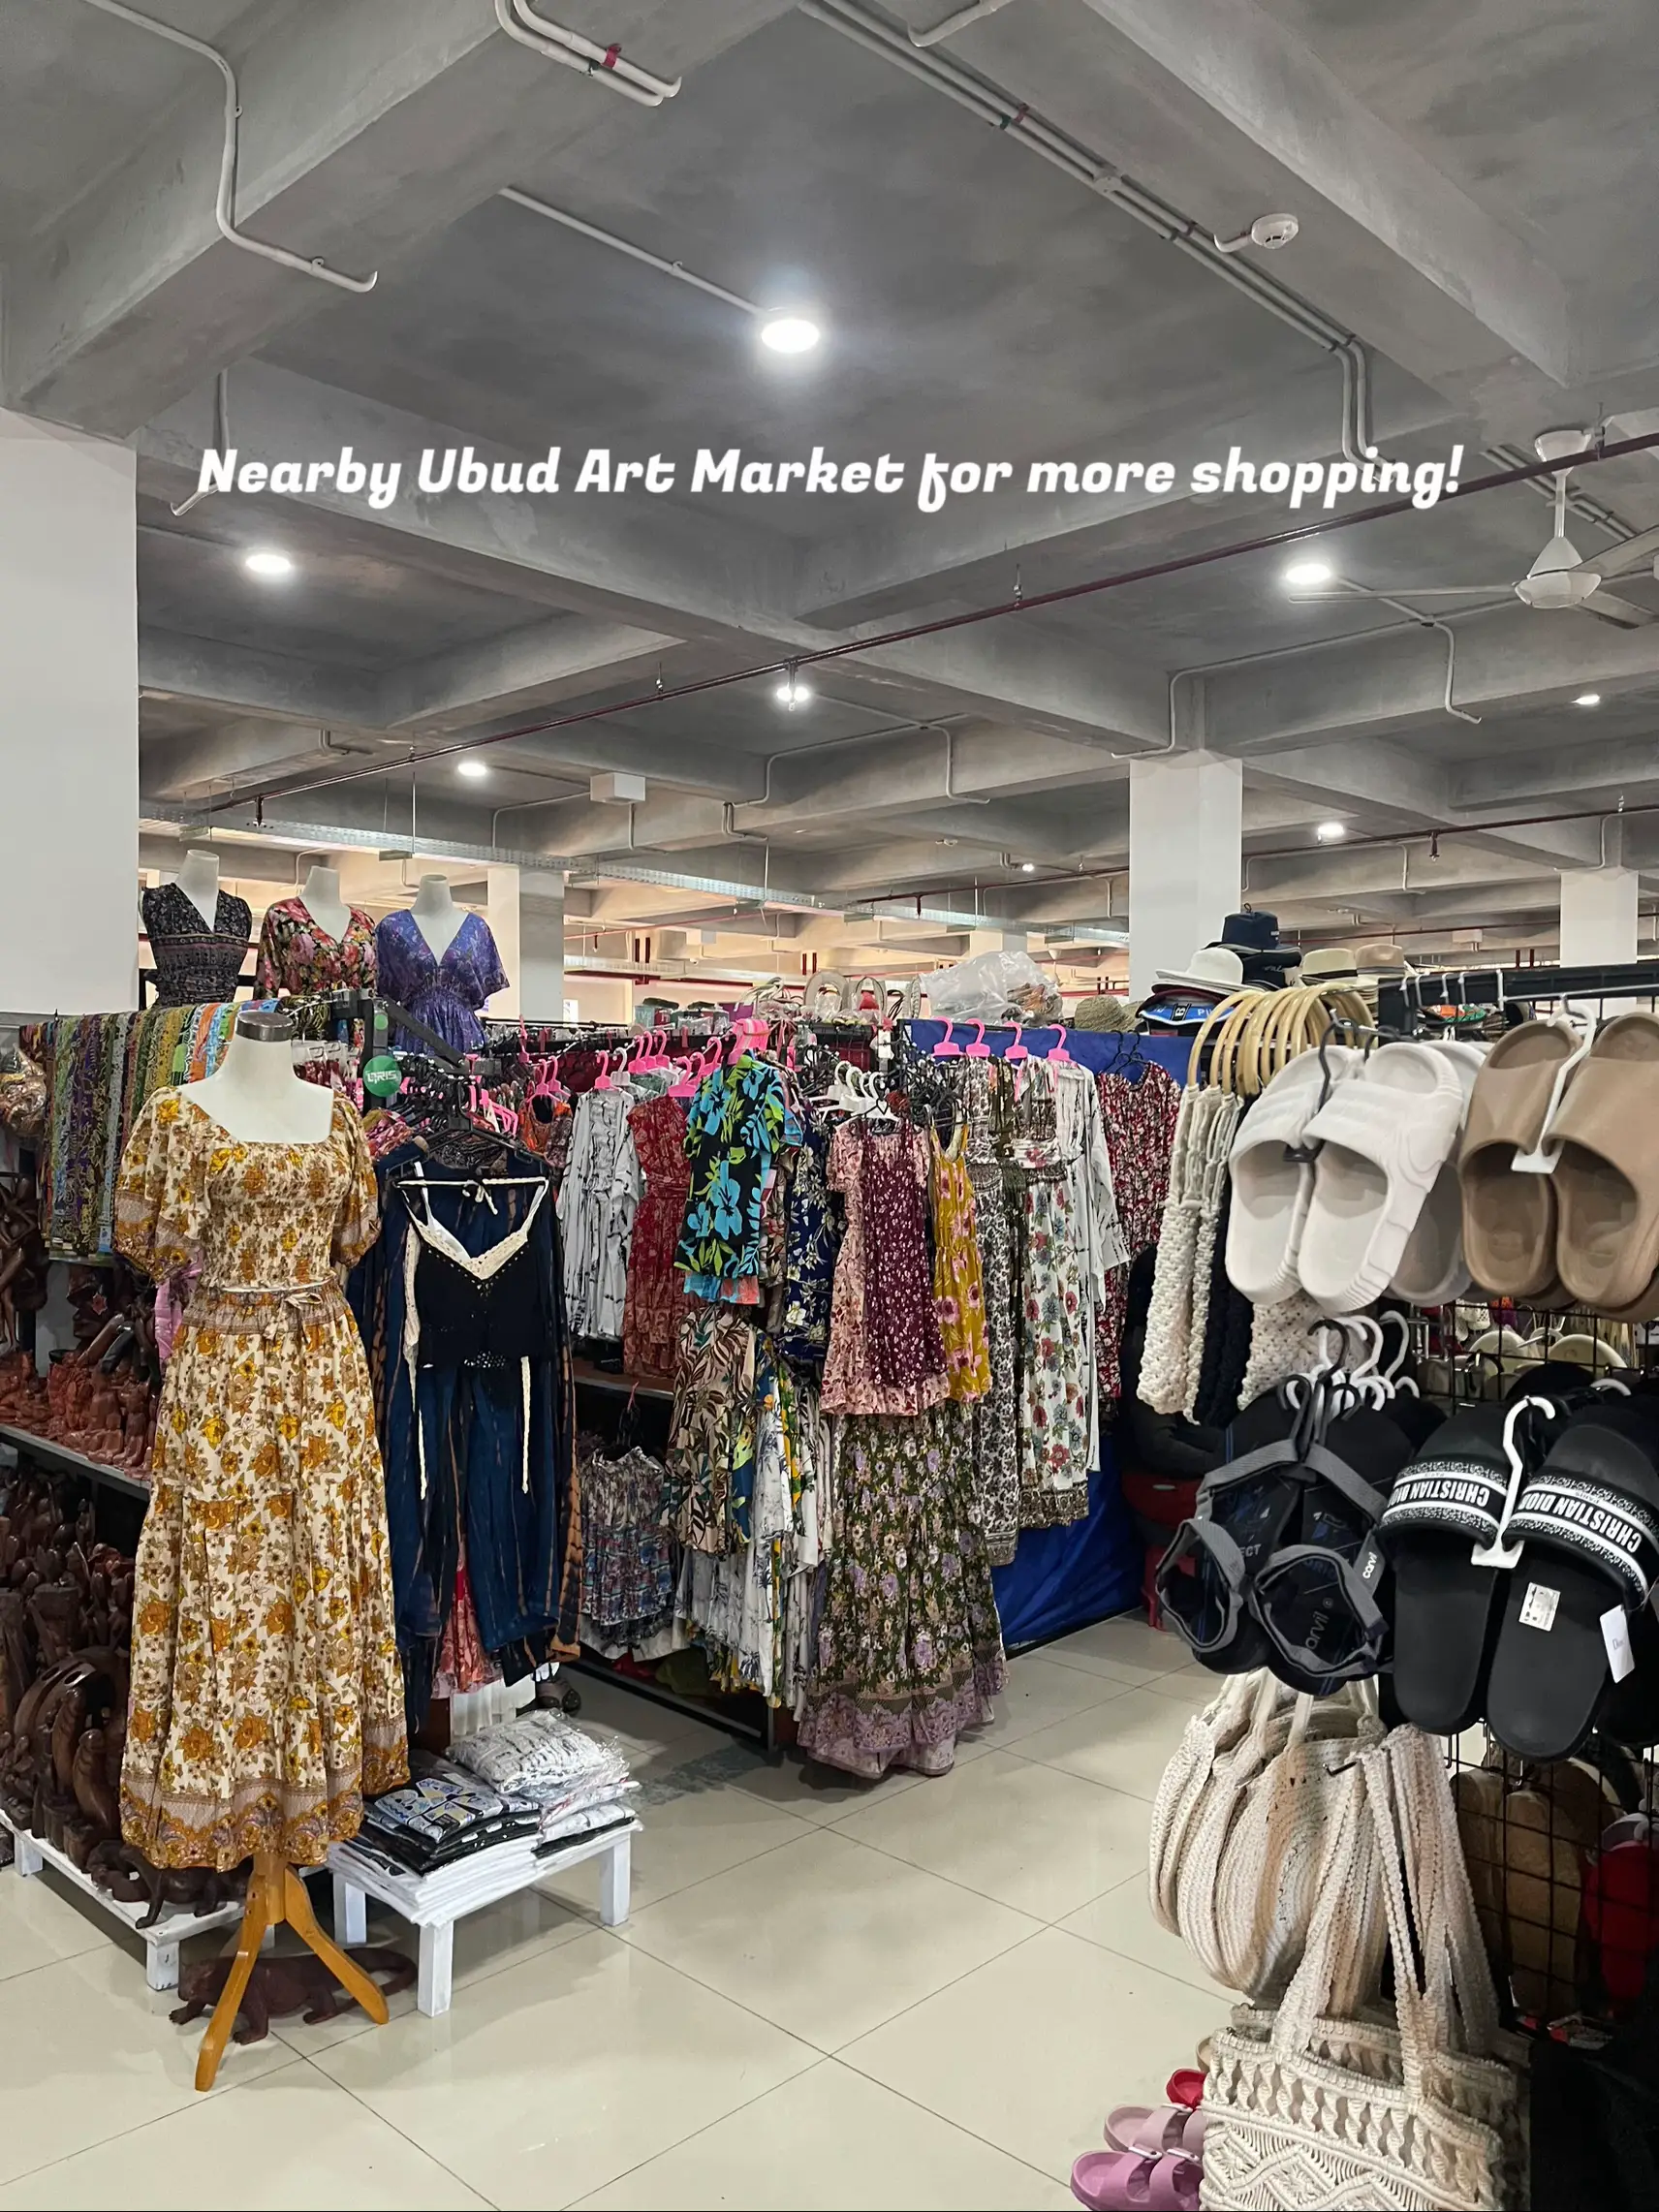 Ubud Art Market, Ubud, Bali, Indonesia - Shop Review